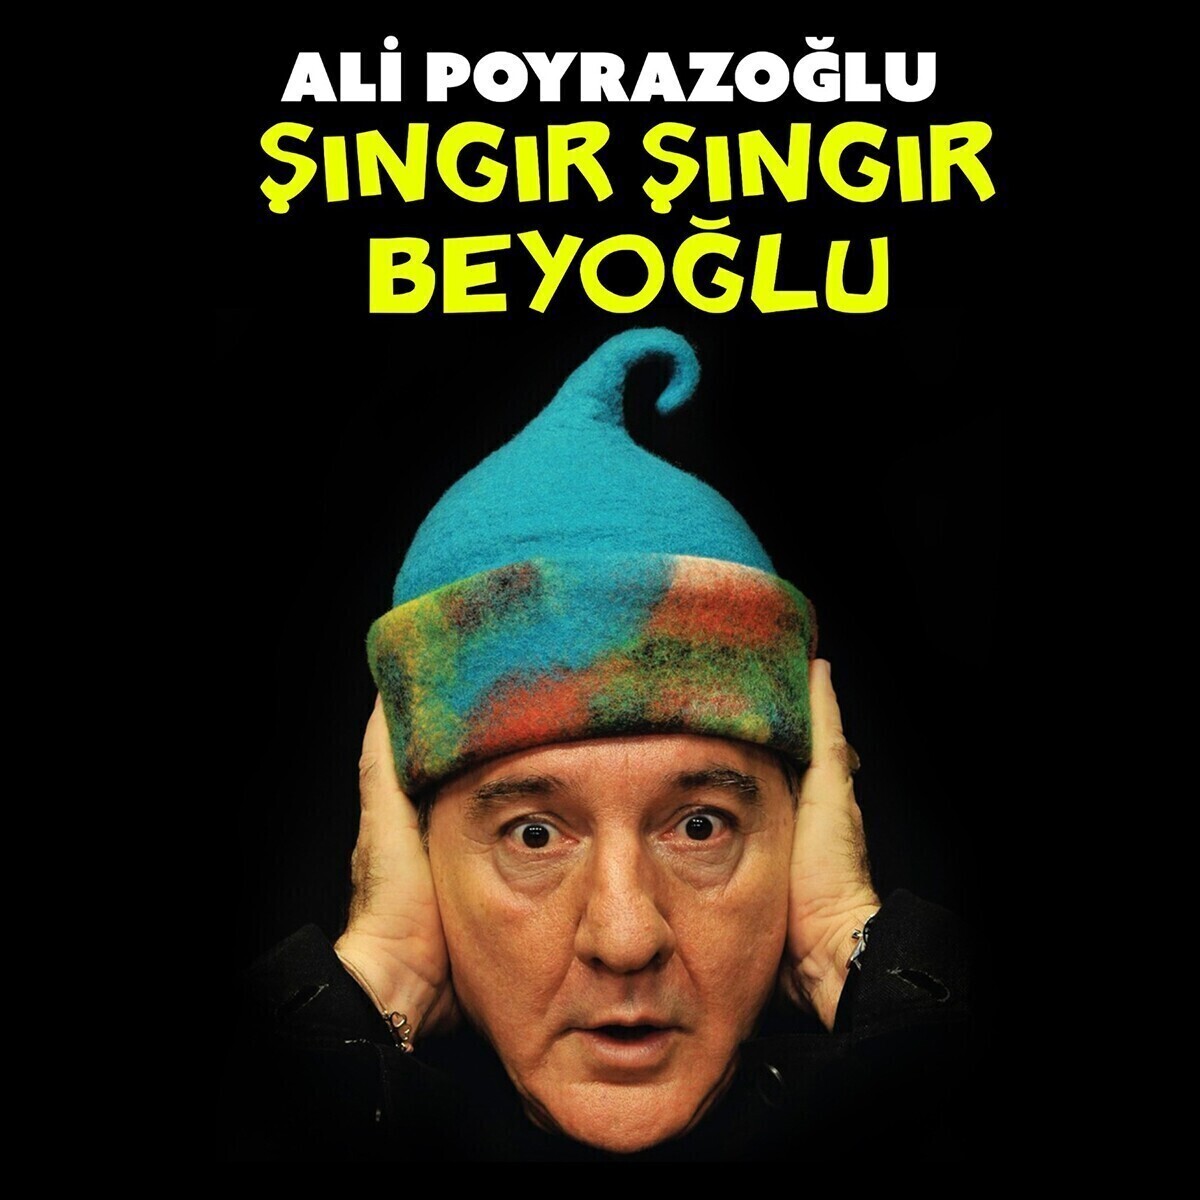 Ali Poyrazoğlu'ndan 'Şıngır Şıngır Beyoğlu' Doğaçlama Tiyatro Oyunu Bileti